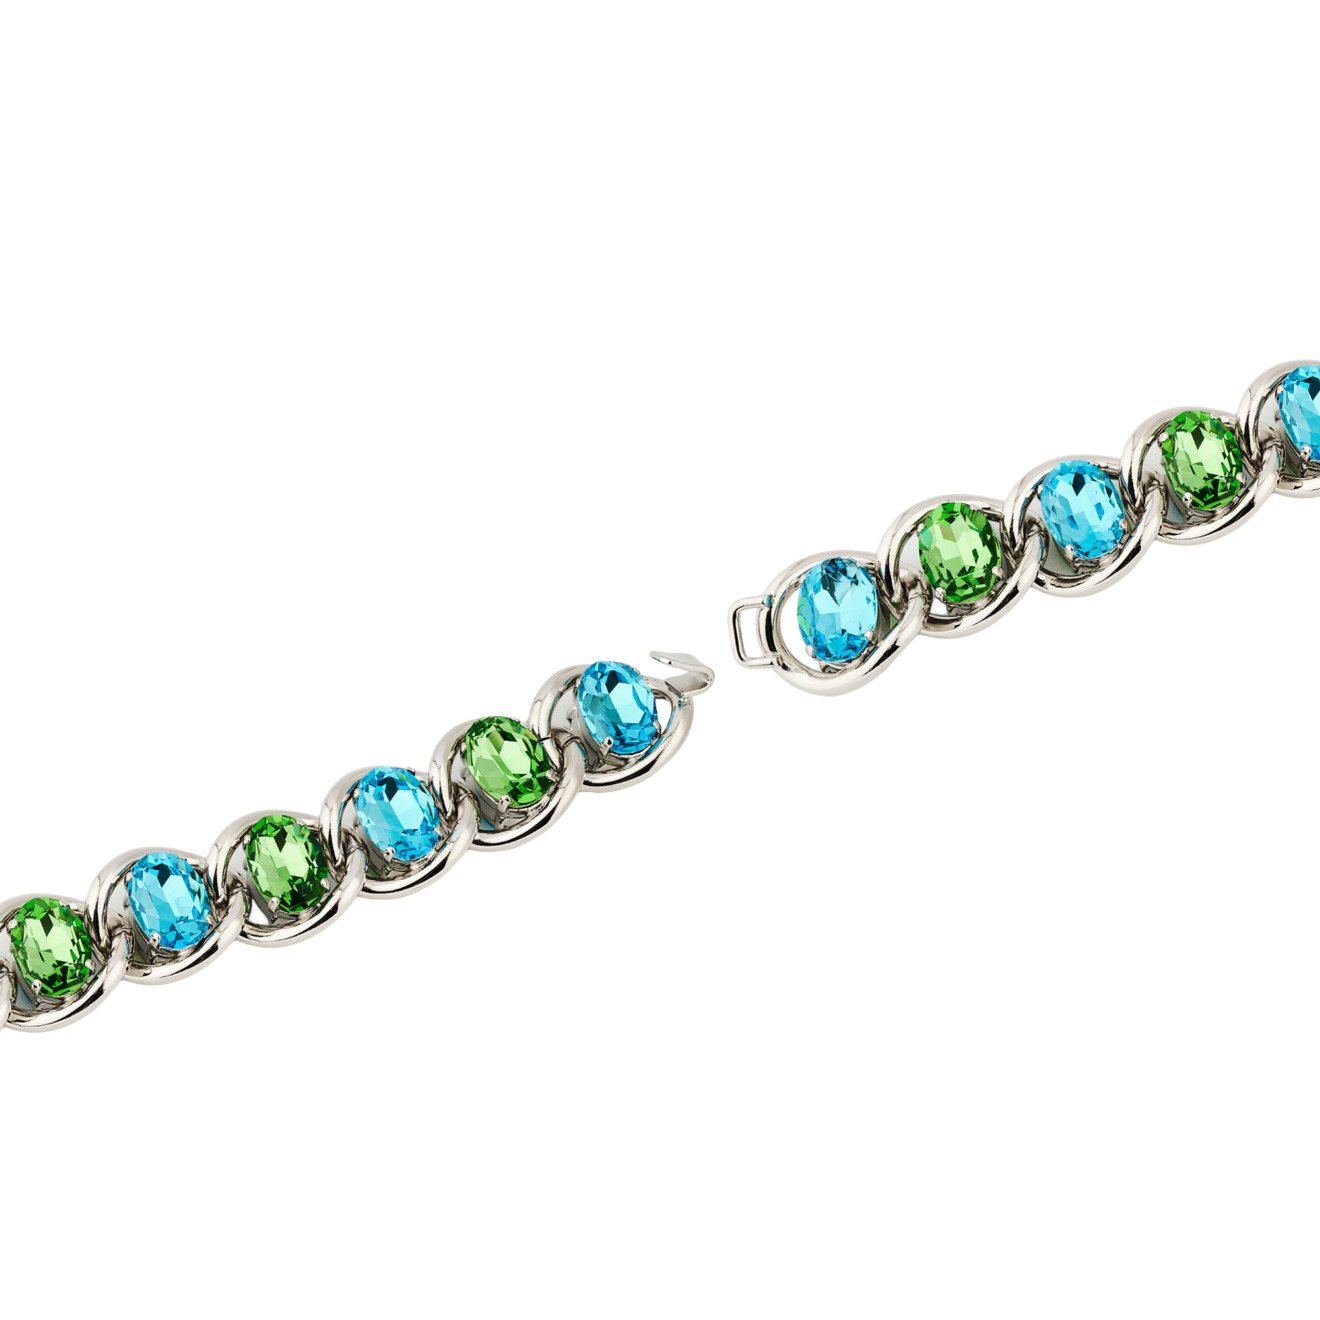 Marni Браслет-цепь с зелено-голубыми кристаллами фото